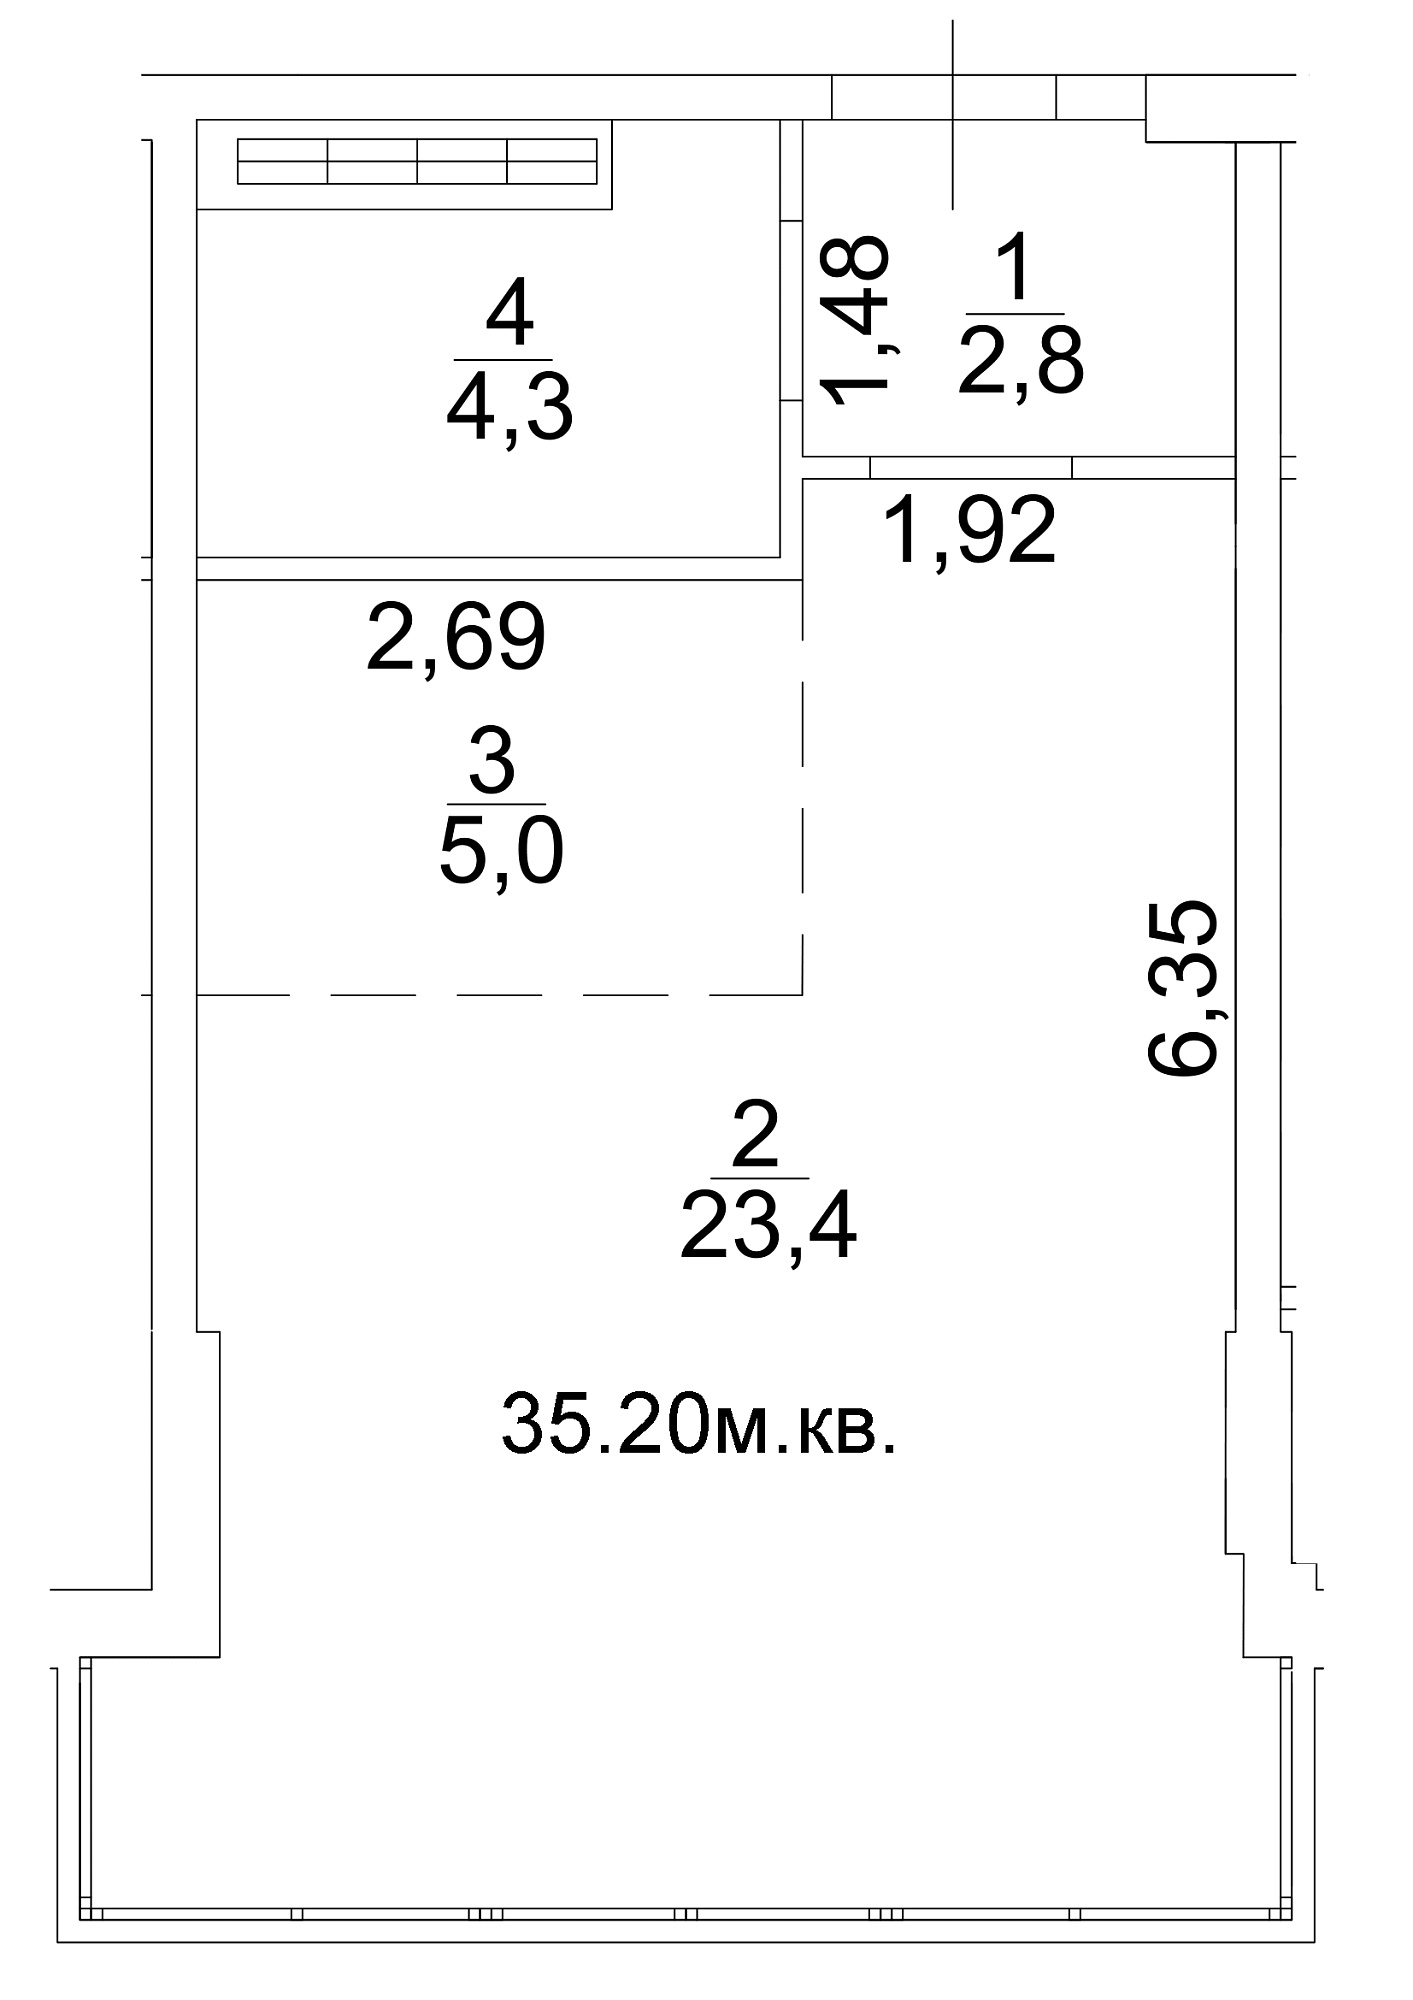 Планування Smart-квартира площею 35.2м2, AB-13-09/0070б.